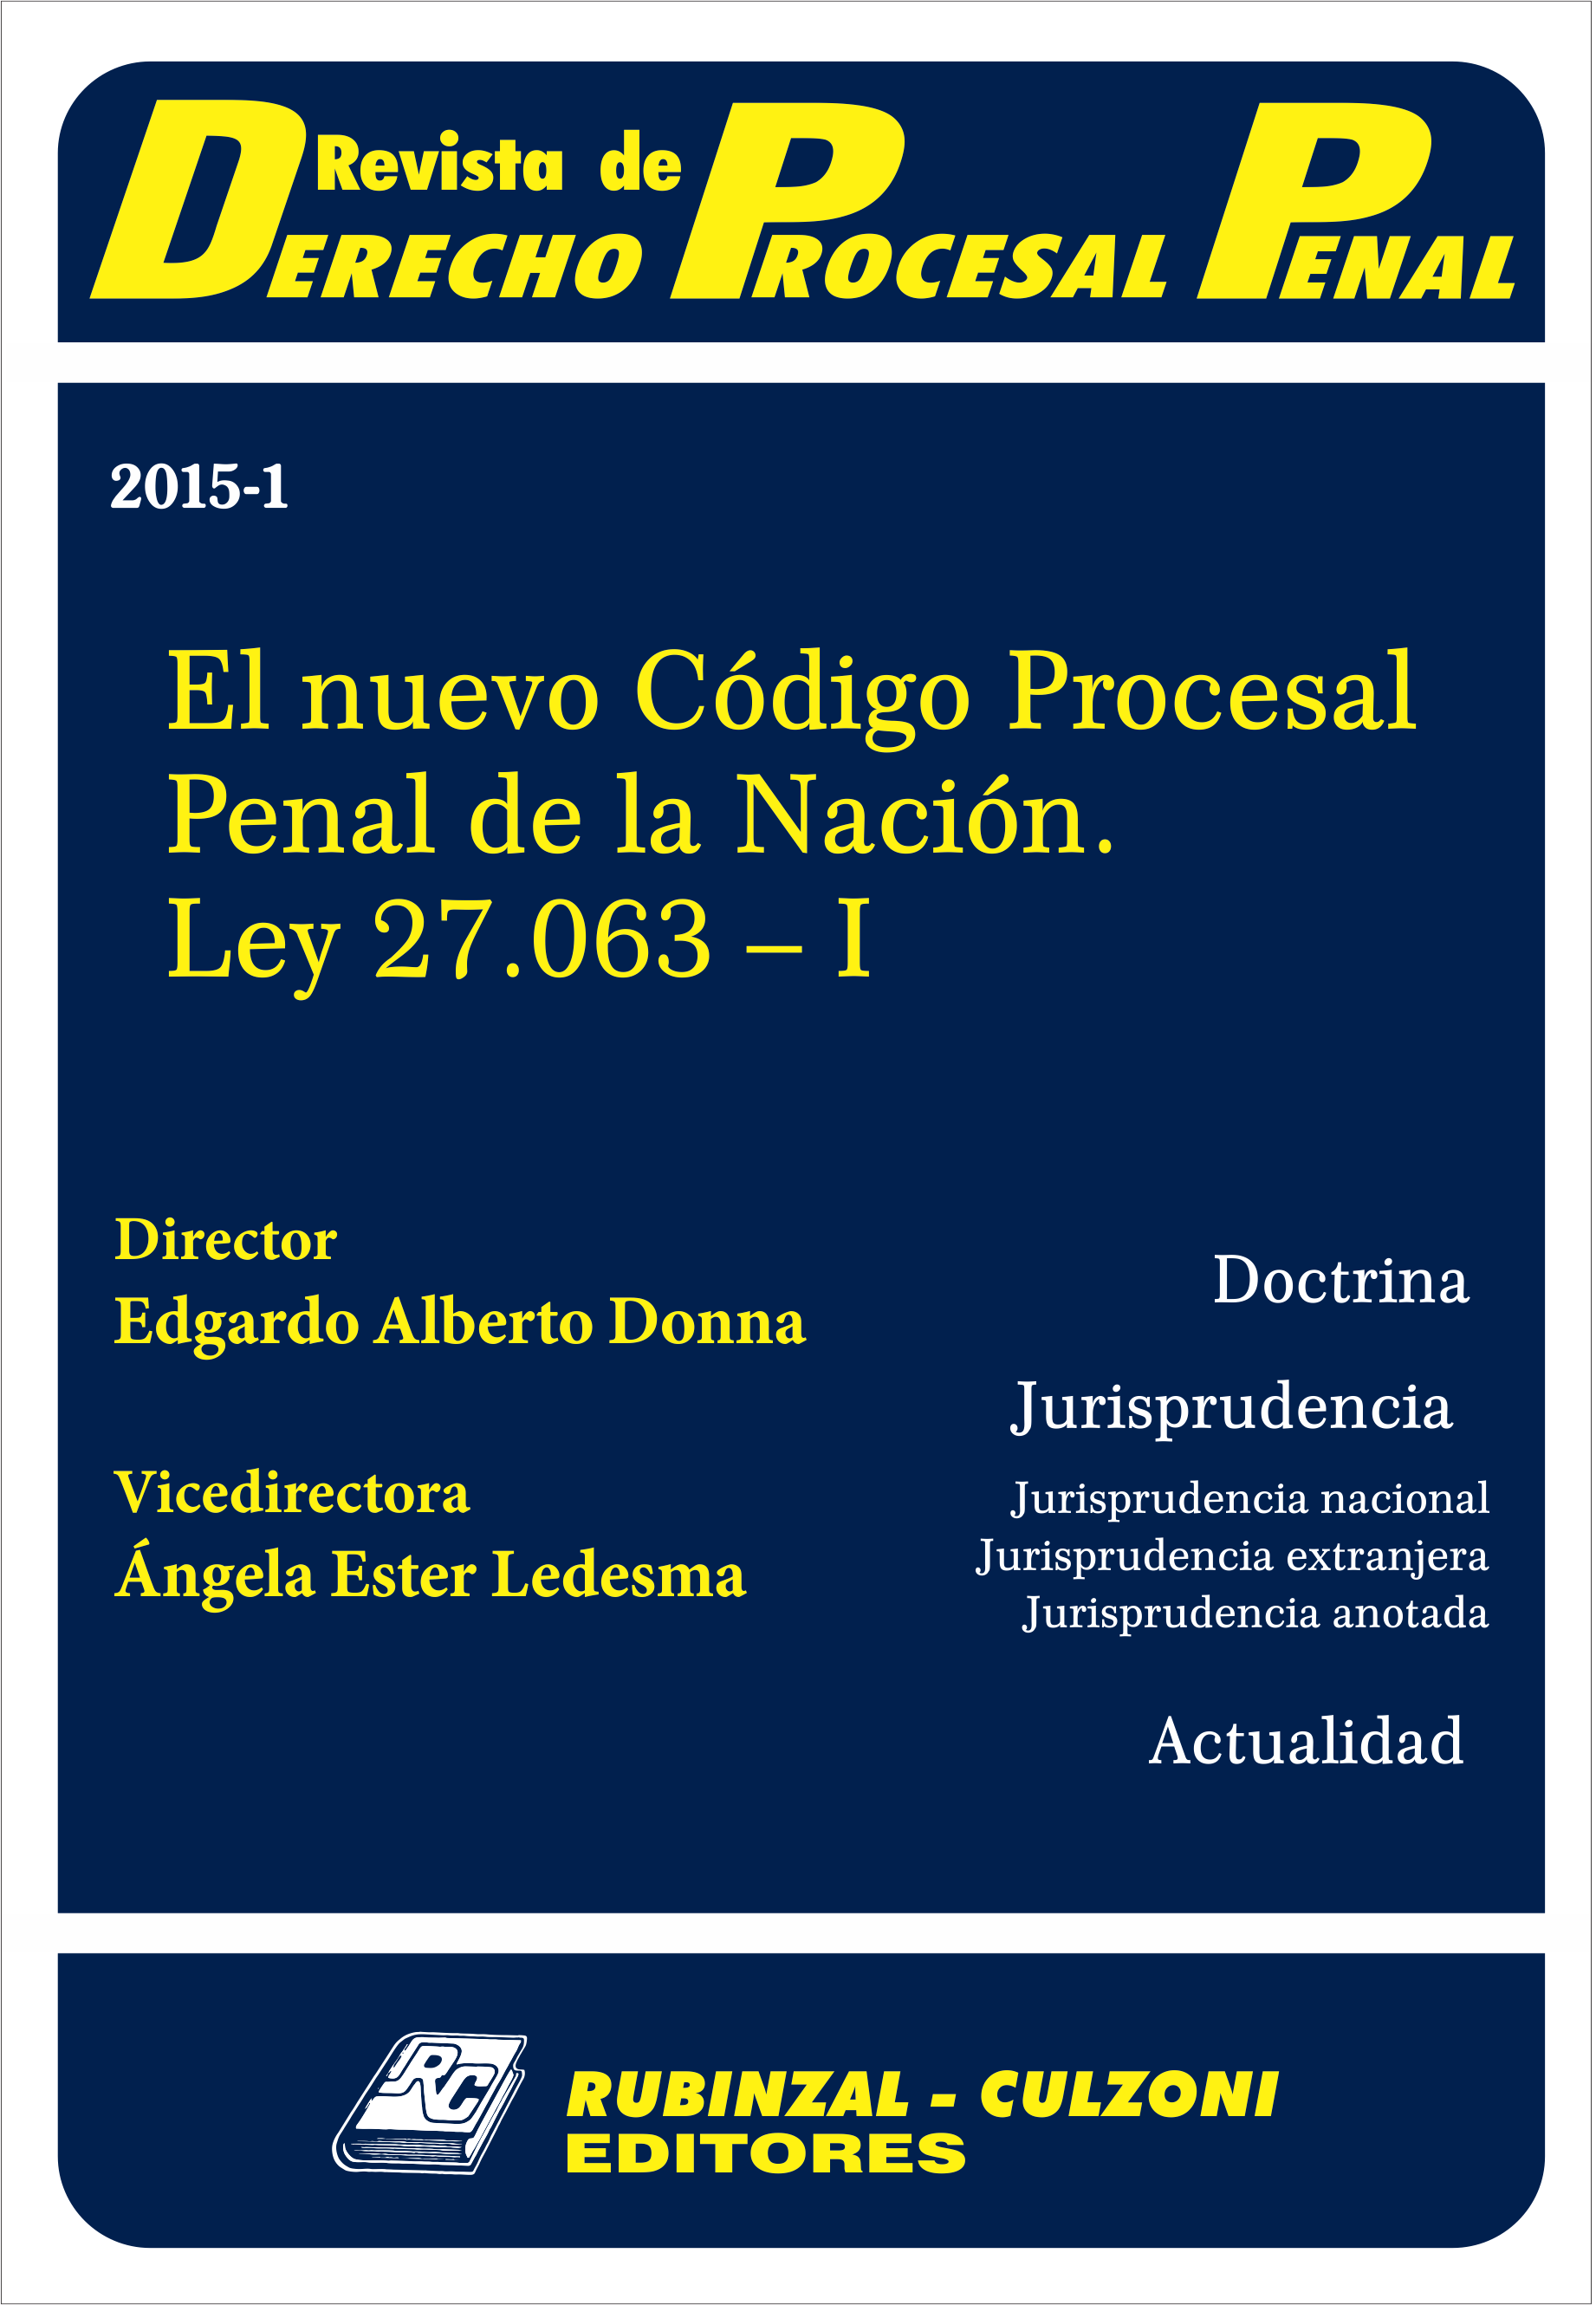 Revista de Derecho Procesal Penal - El nuevo Código Procesal Penal de la Nación. Ley 27.063 - I.